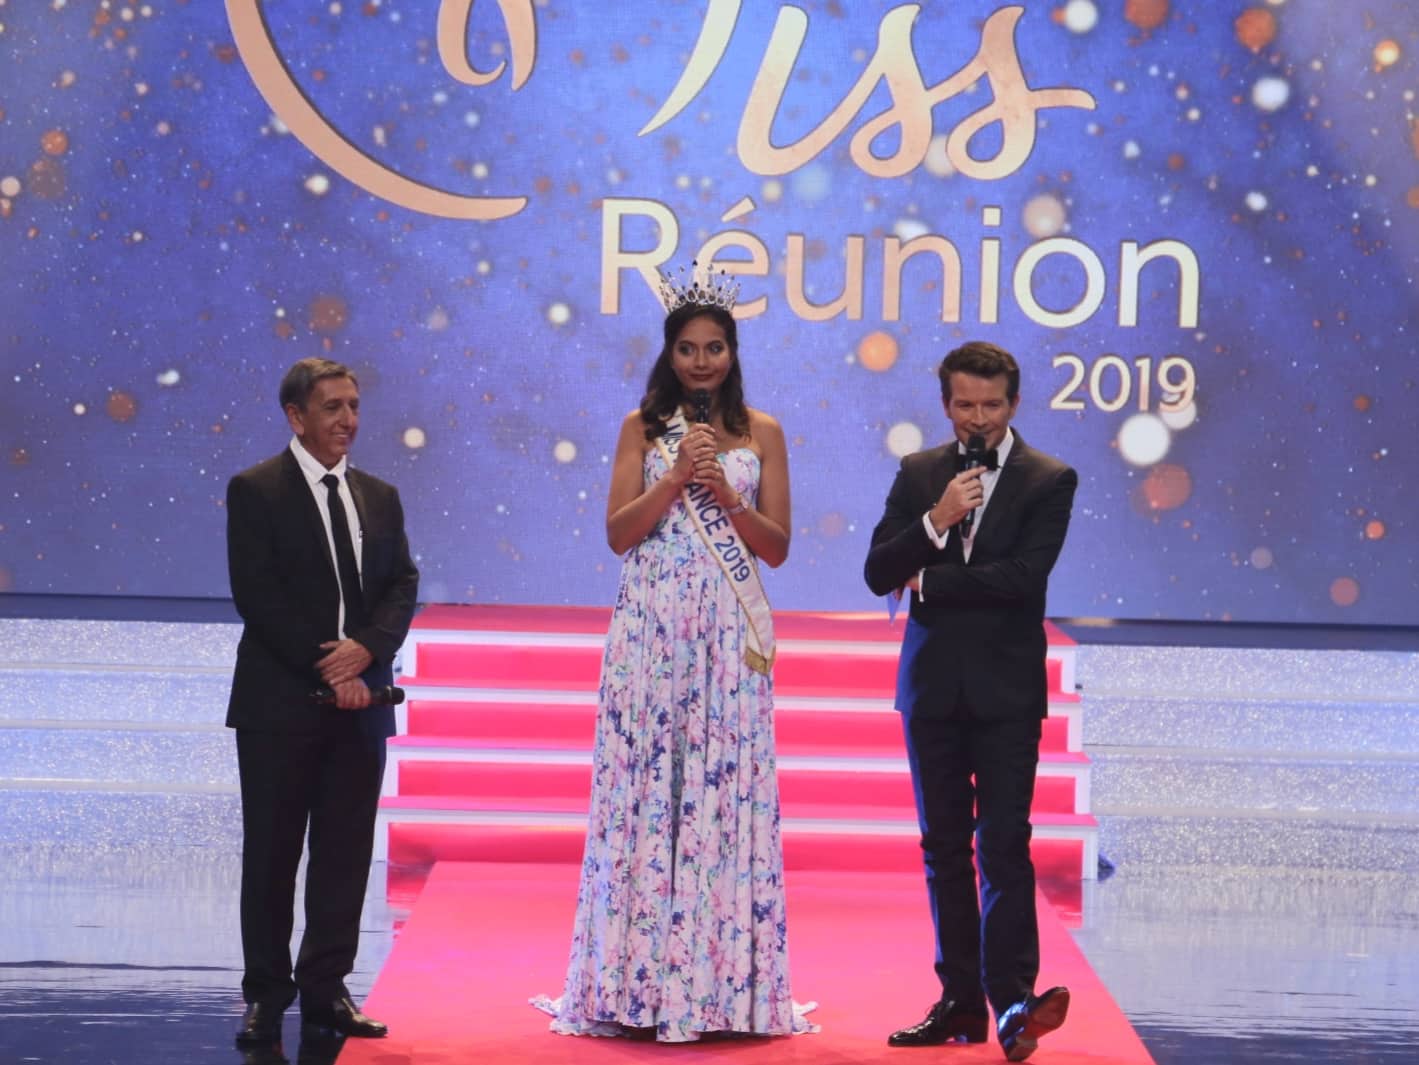 ▶️ Les images de la soirée Miss Réunion 2019